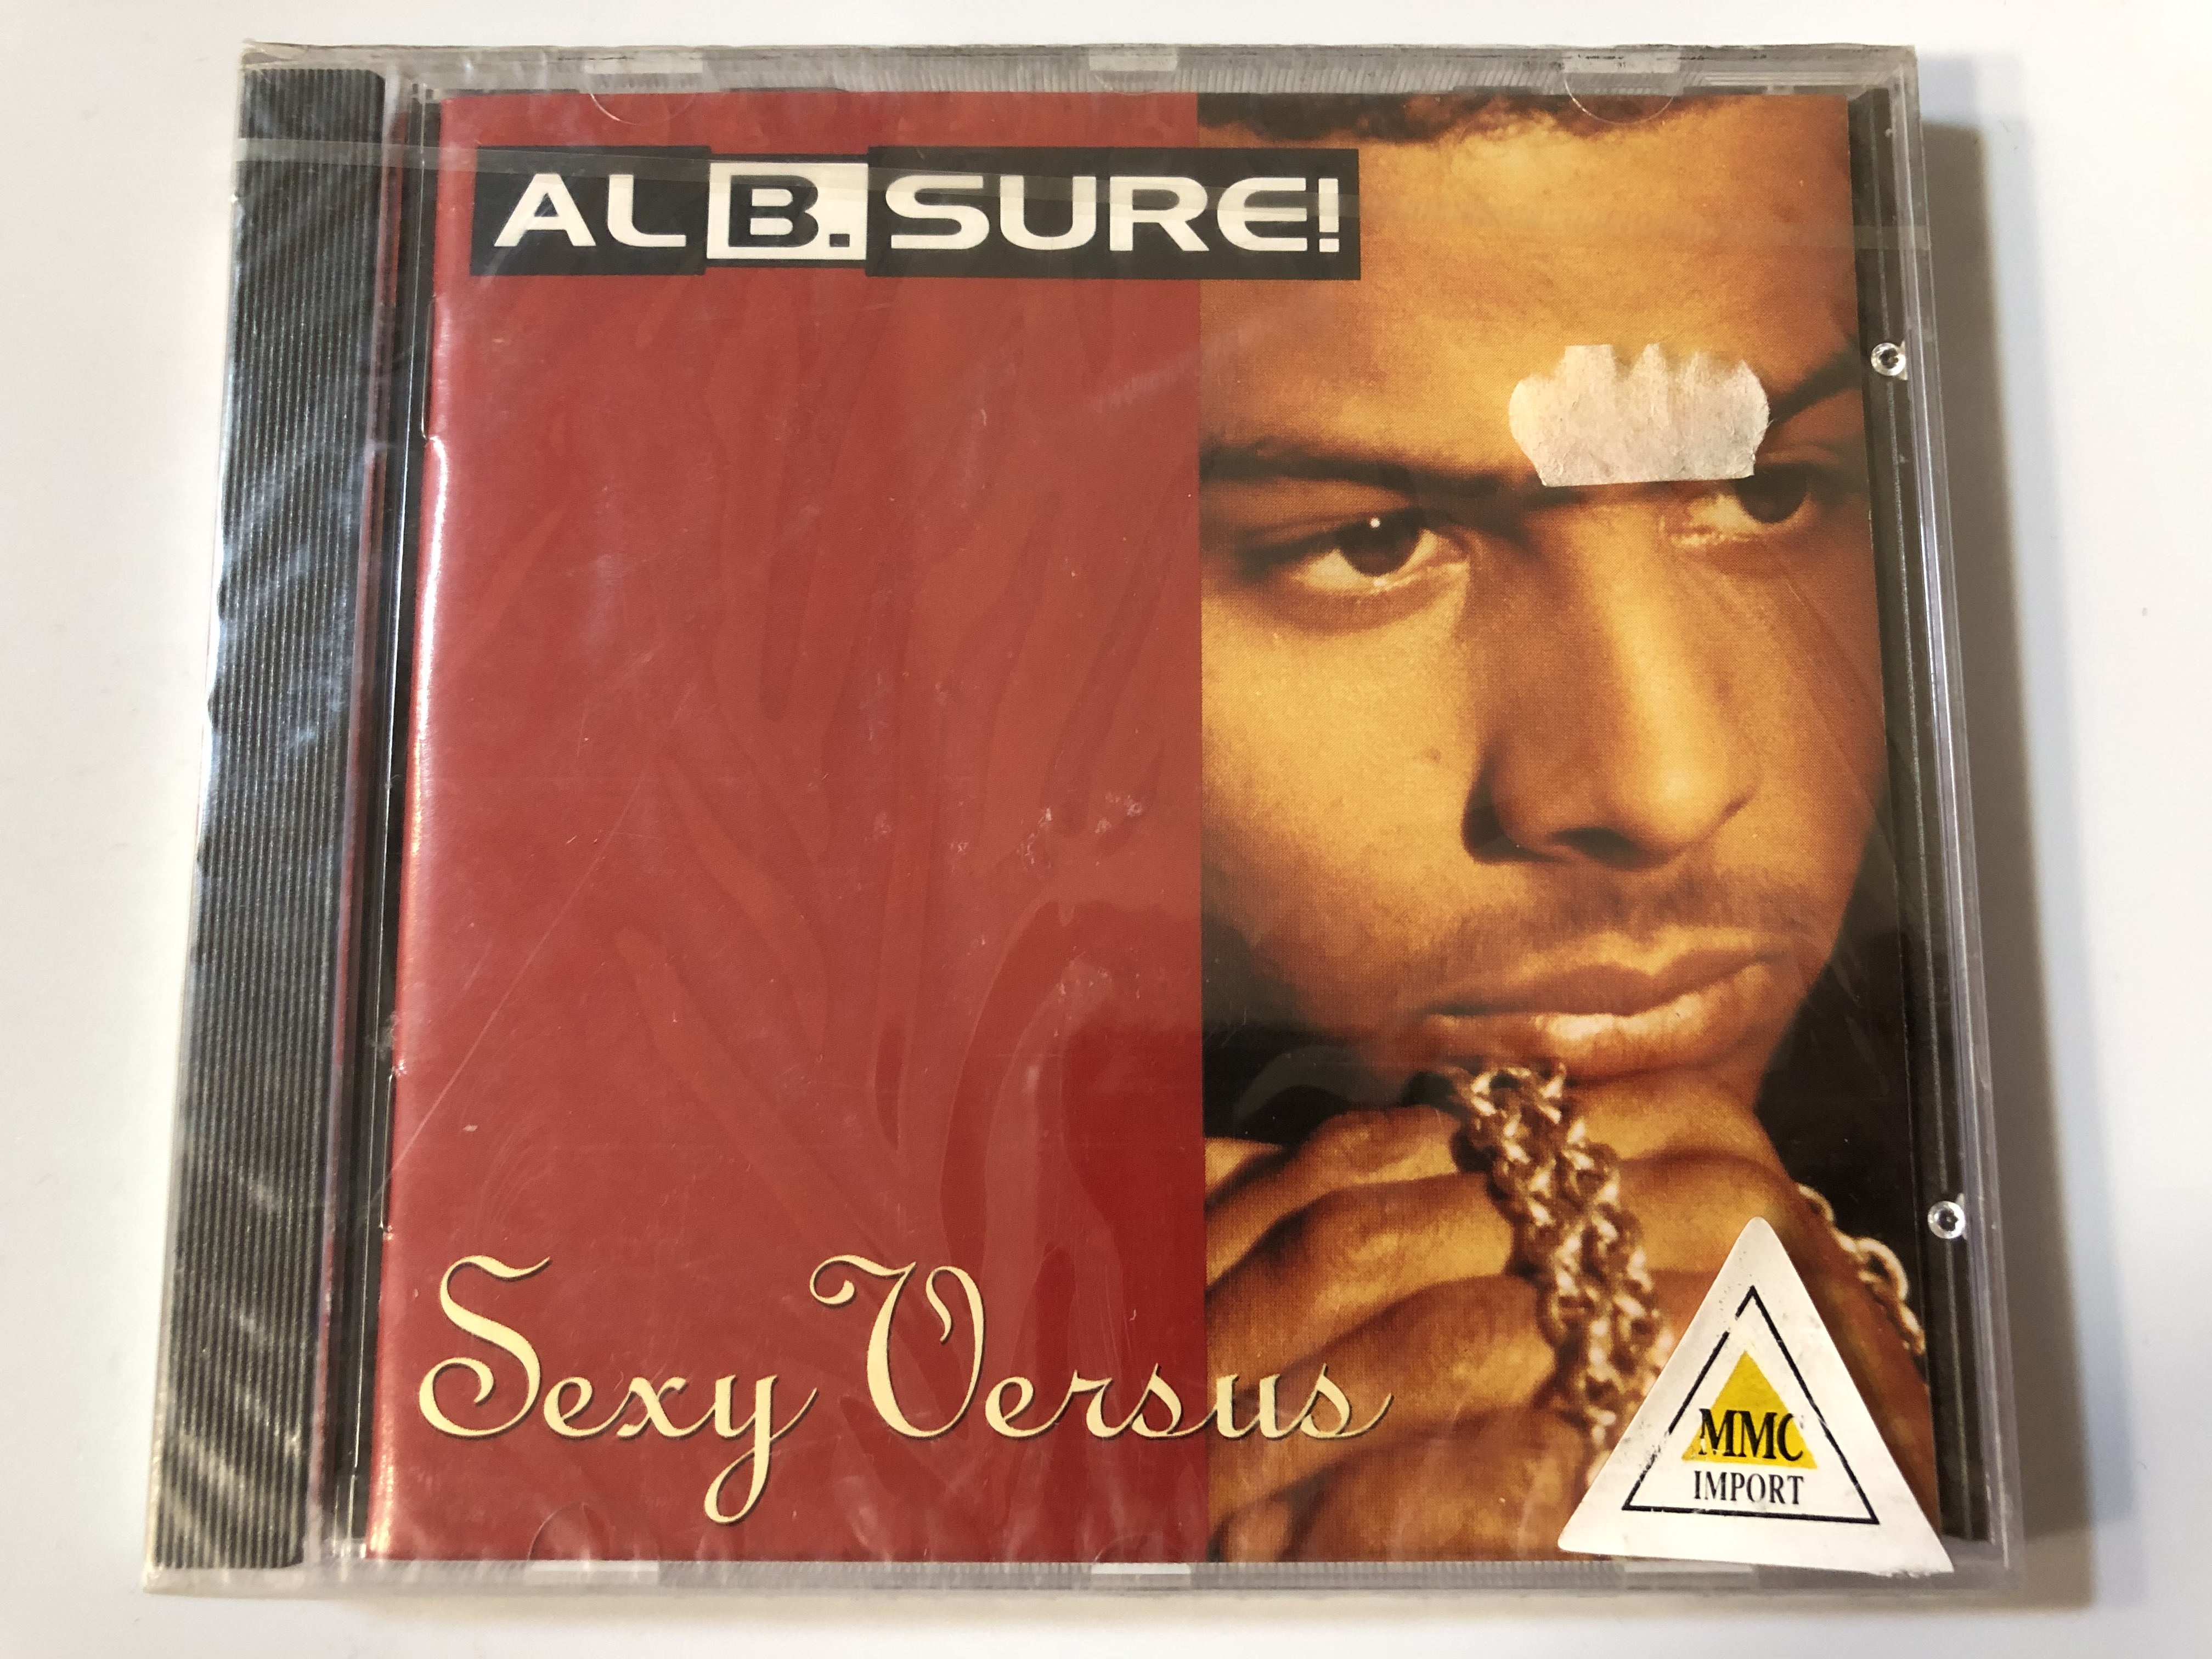 al-b.-sure-sexy-versus-warner-bros.-records-audio-cd-1992-7599-26973-2-1-.jpg